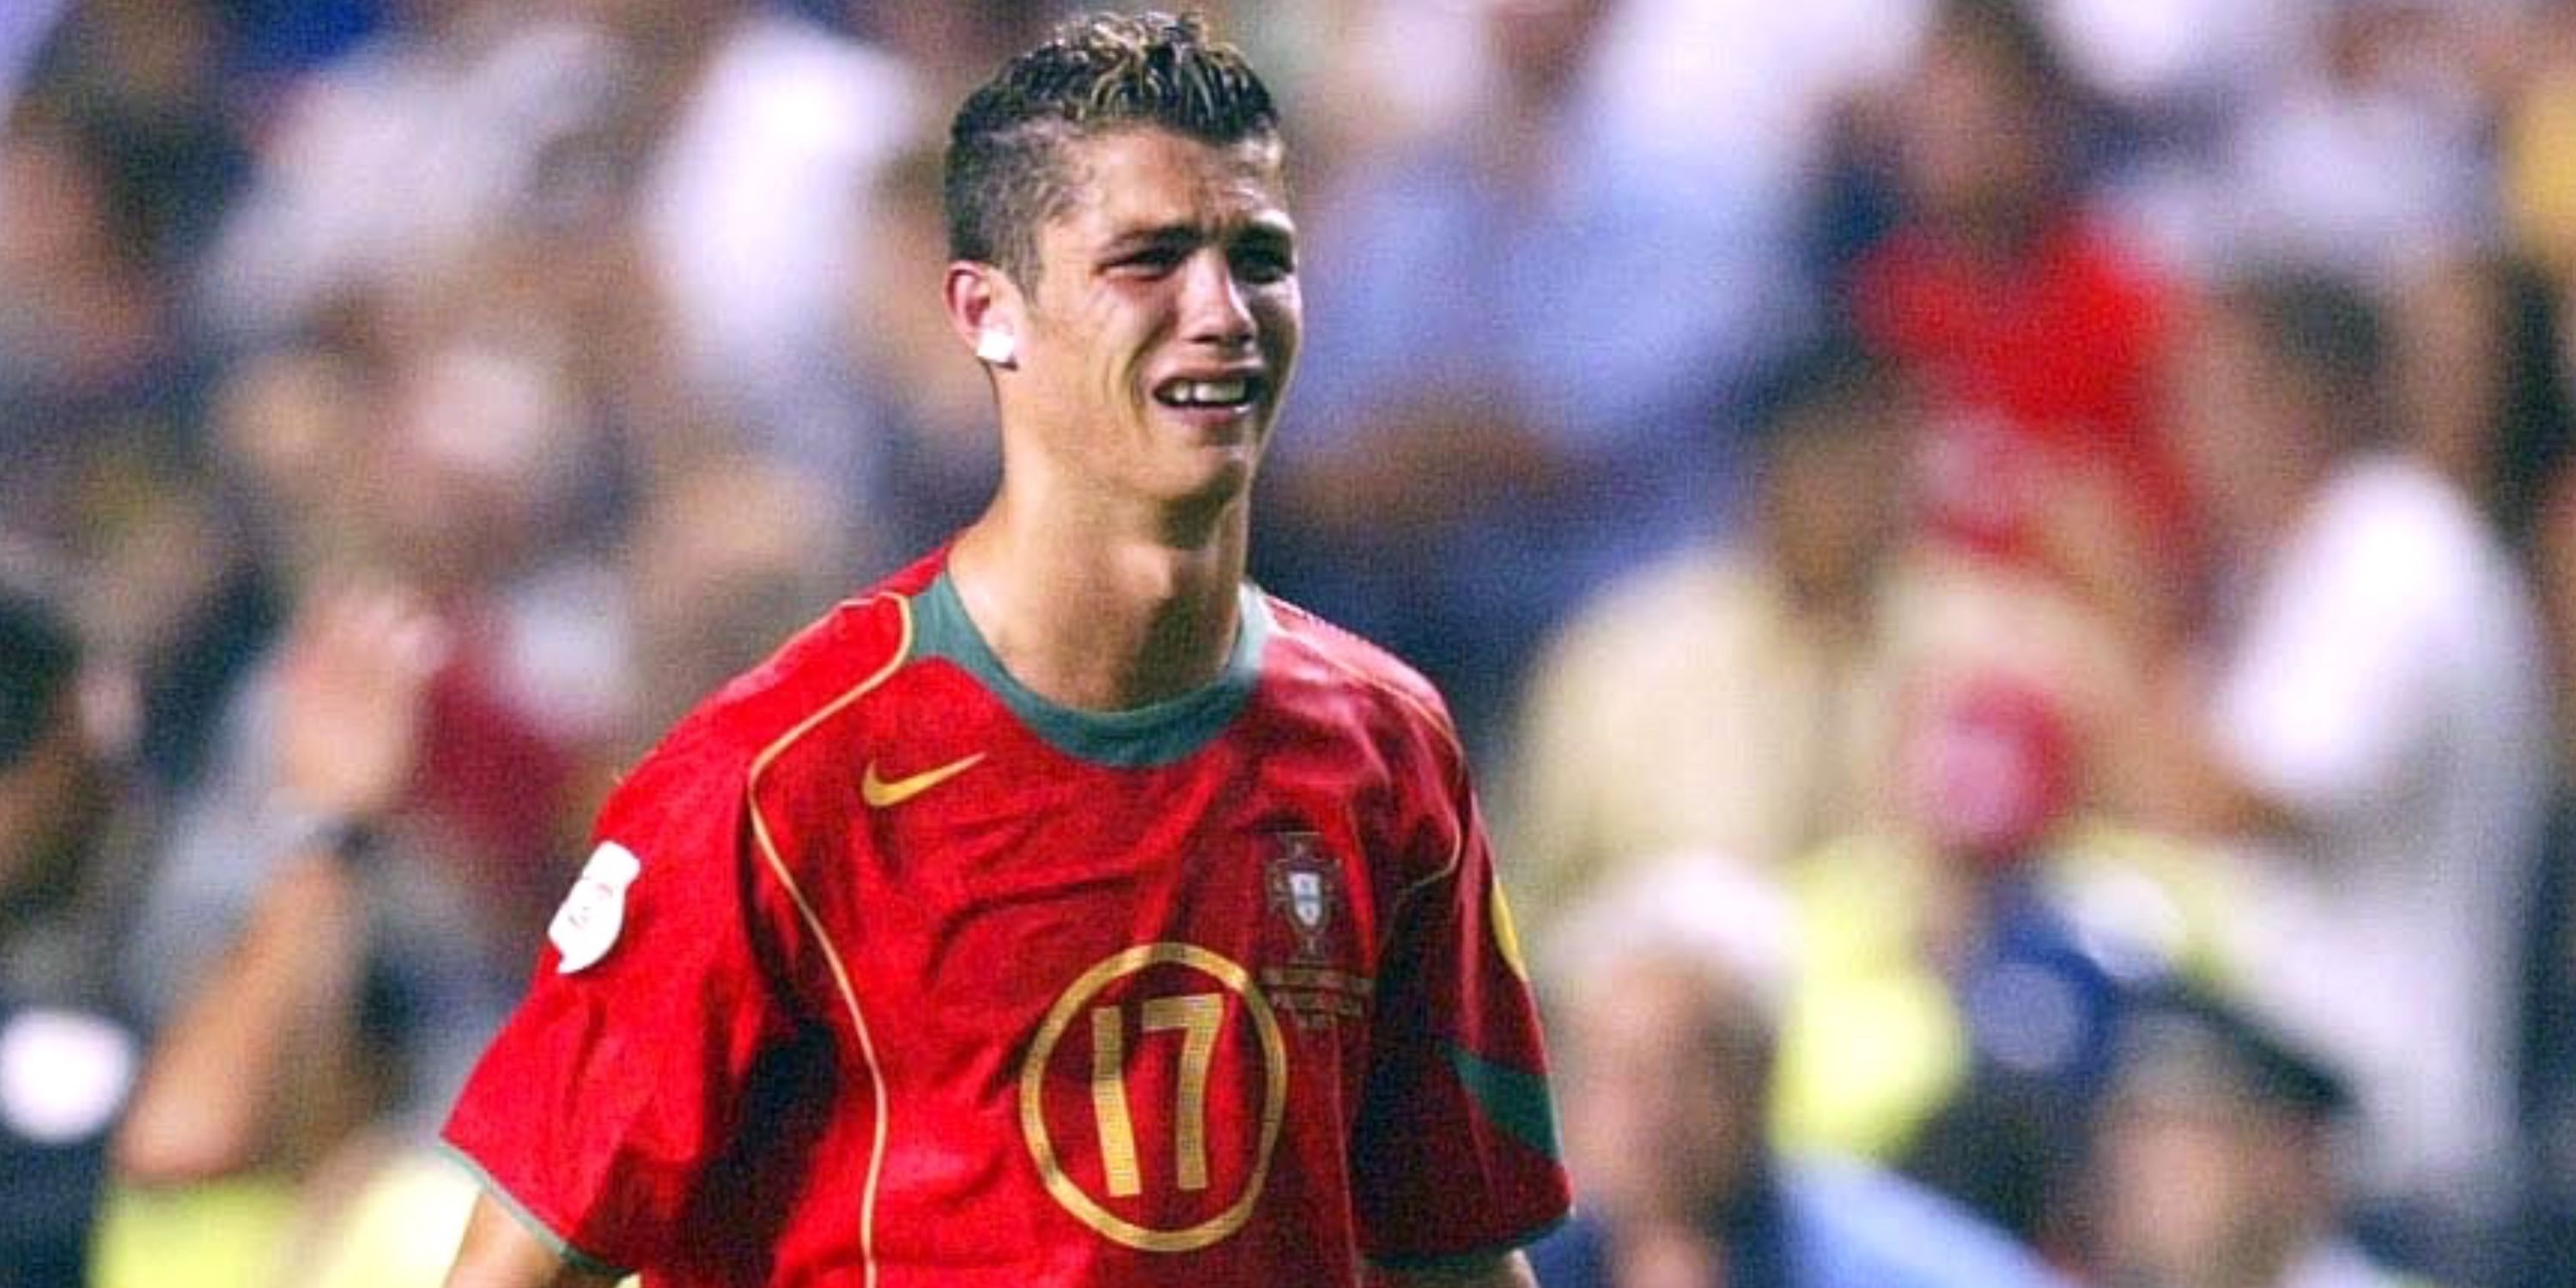 Cristiano Ronaldo in 2004